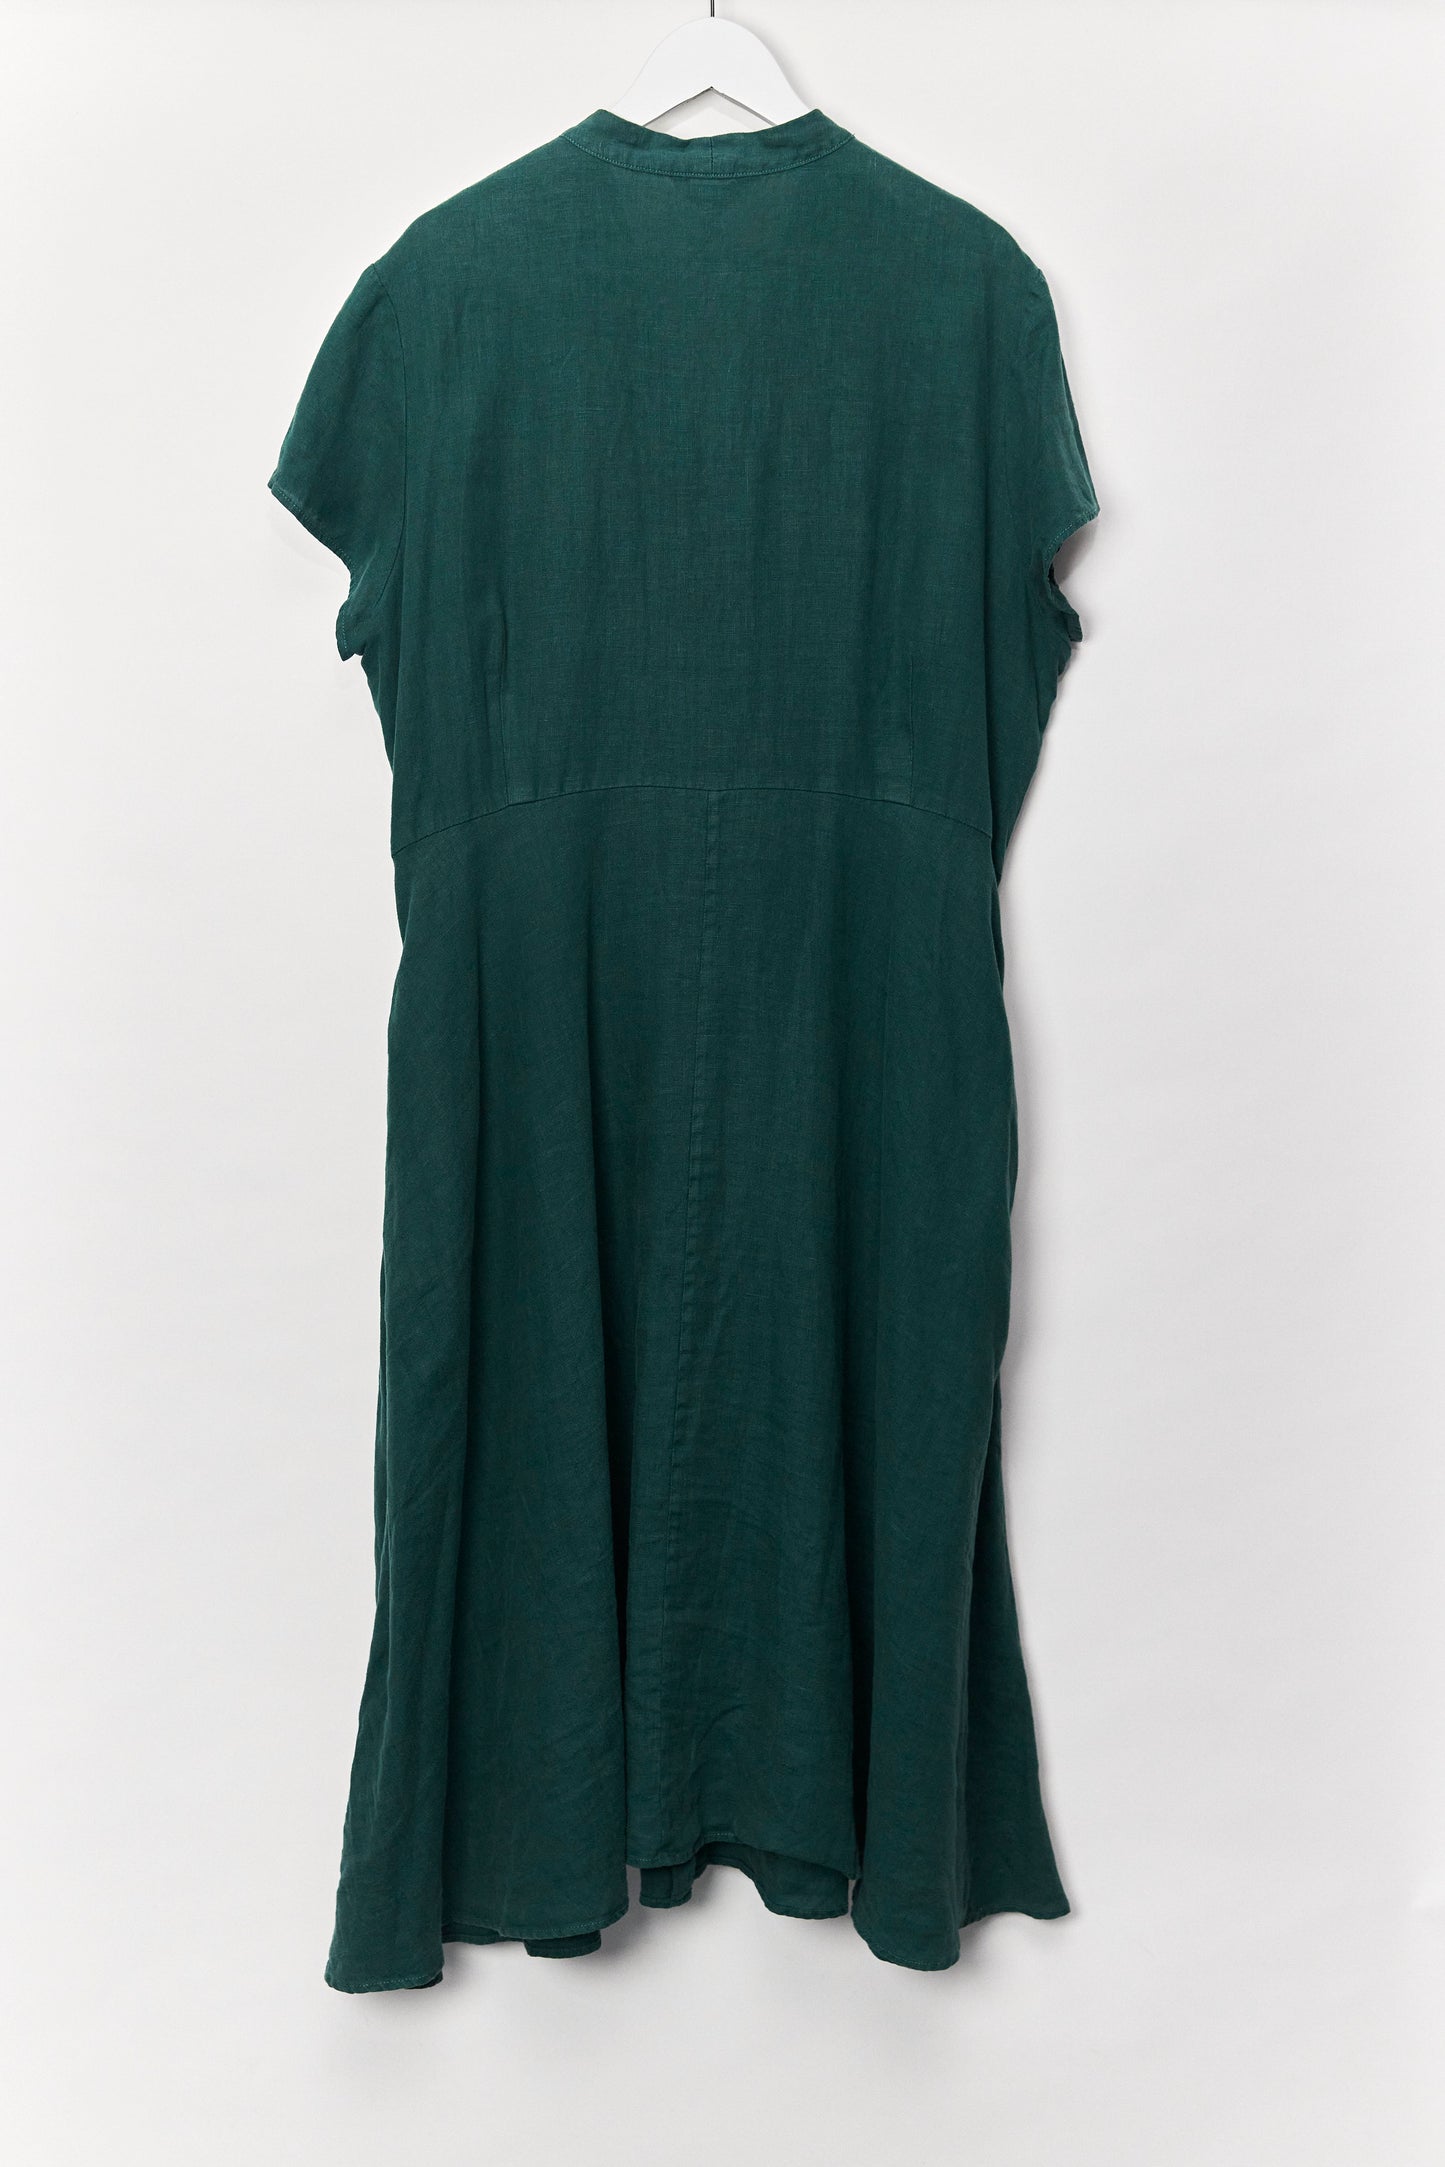 Womens Green Linen SeaSalt Cornwall Dress size 20